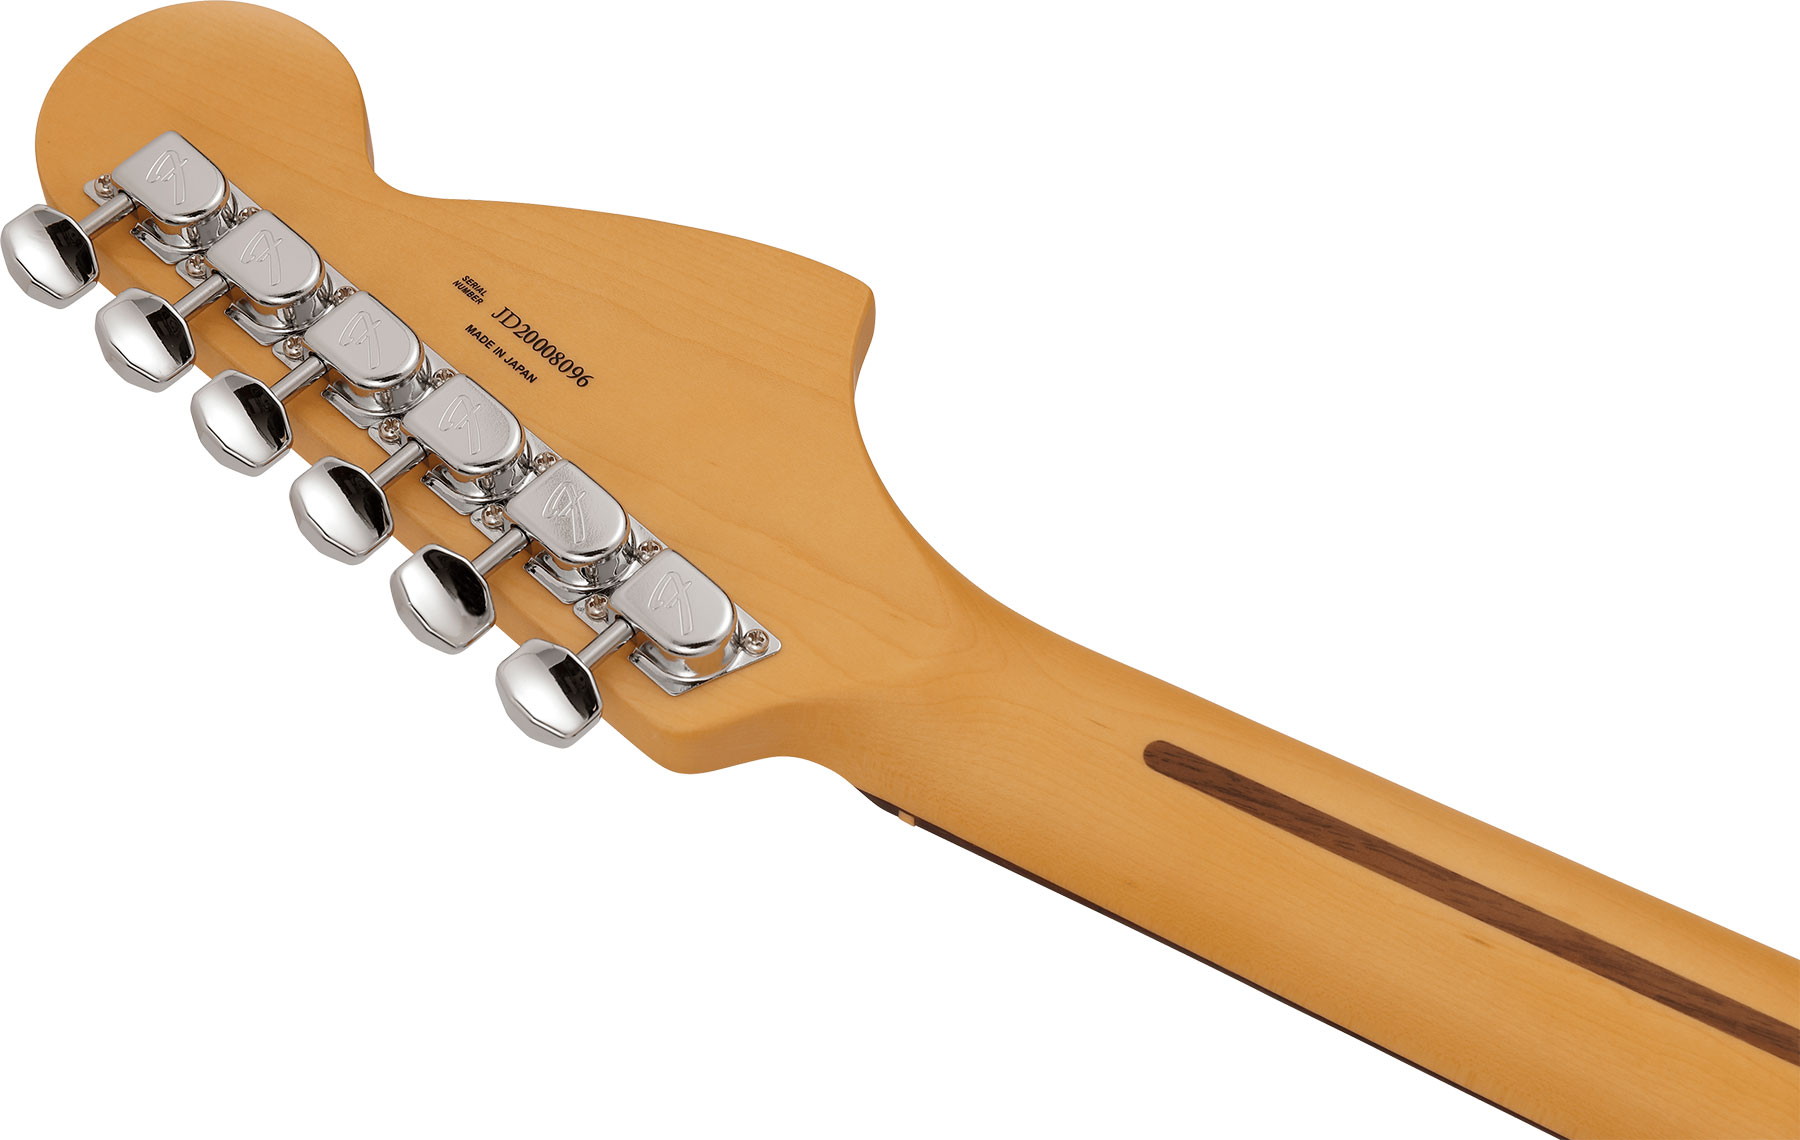 Fender Mustang Reverse Headstock Traditional Ltd Jap Hs Trem Rw - 3-color Sunburst - E-Gitarre in Str-Form - Variation 3